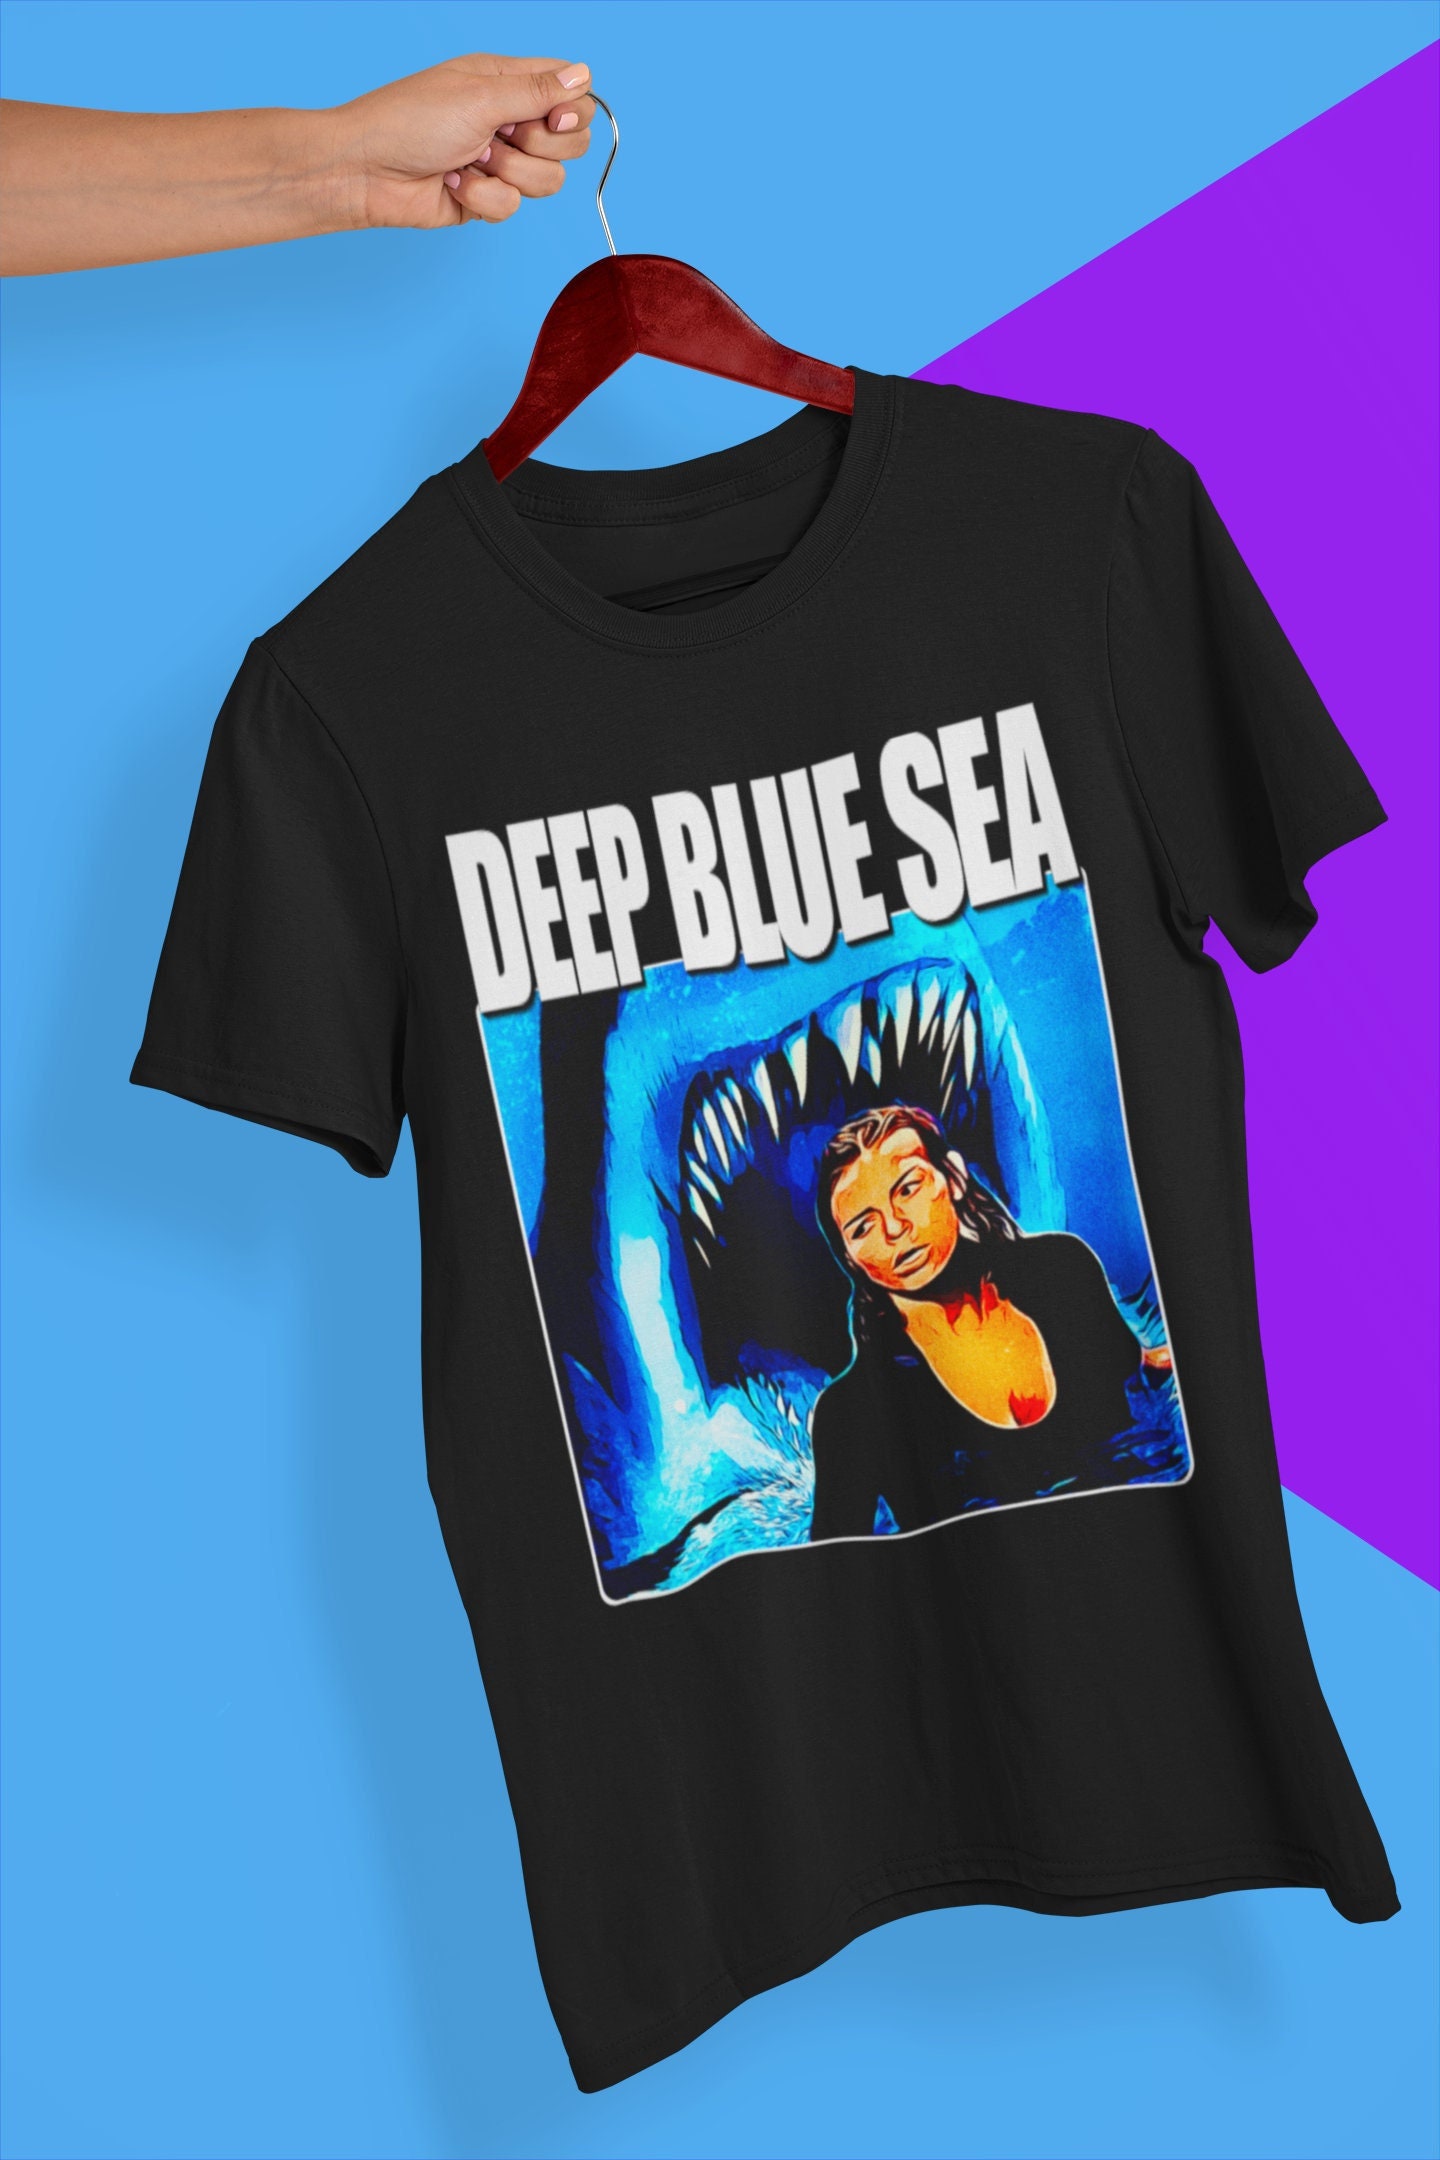 Discover Deep Blue Sea T-Shirt, Deep Blue Sea Movie Poster Shirt, 90s Movie Nostalgia Shirt